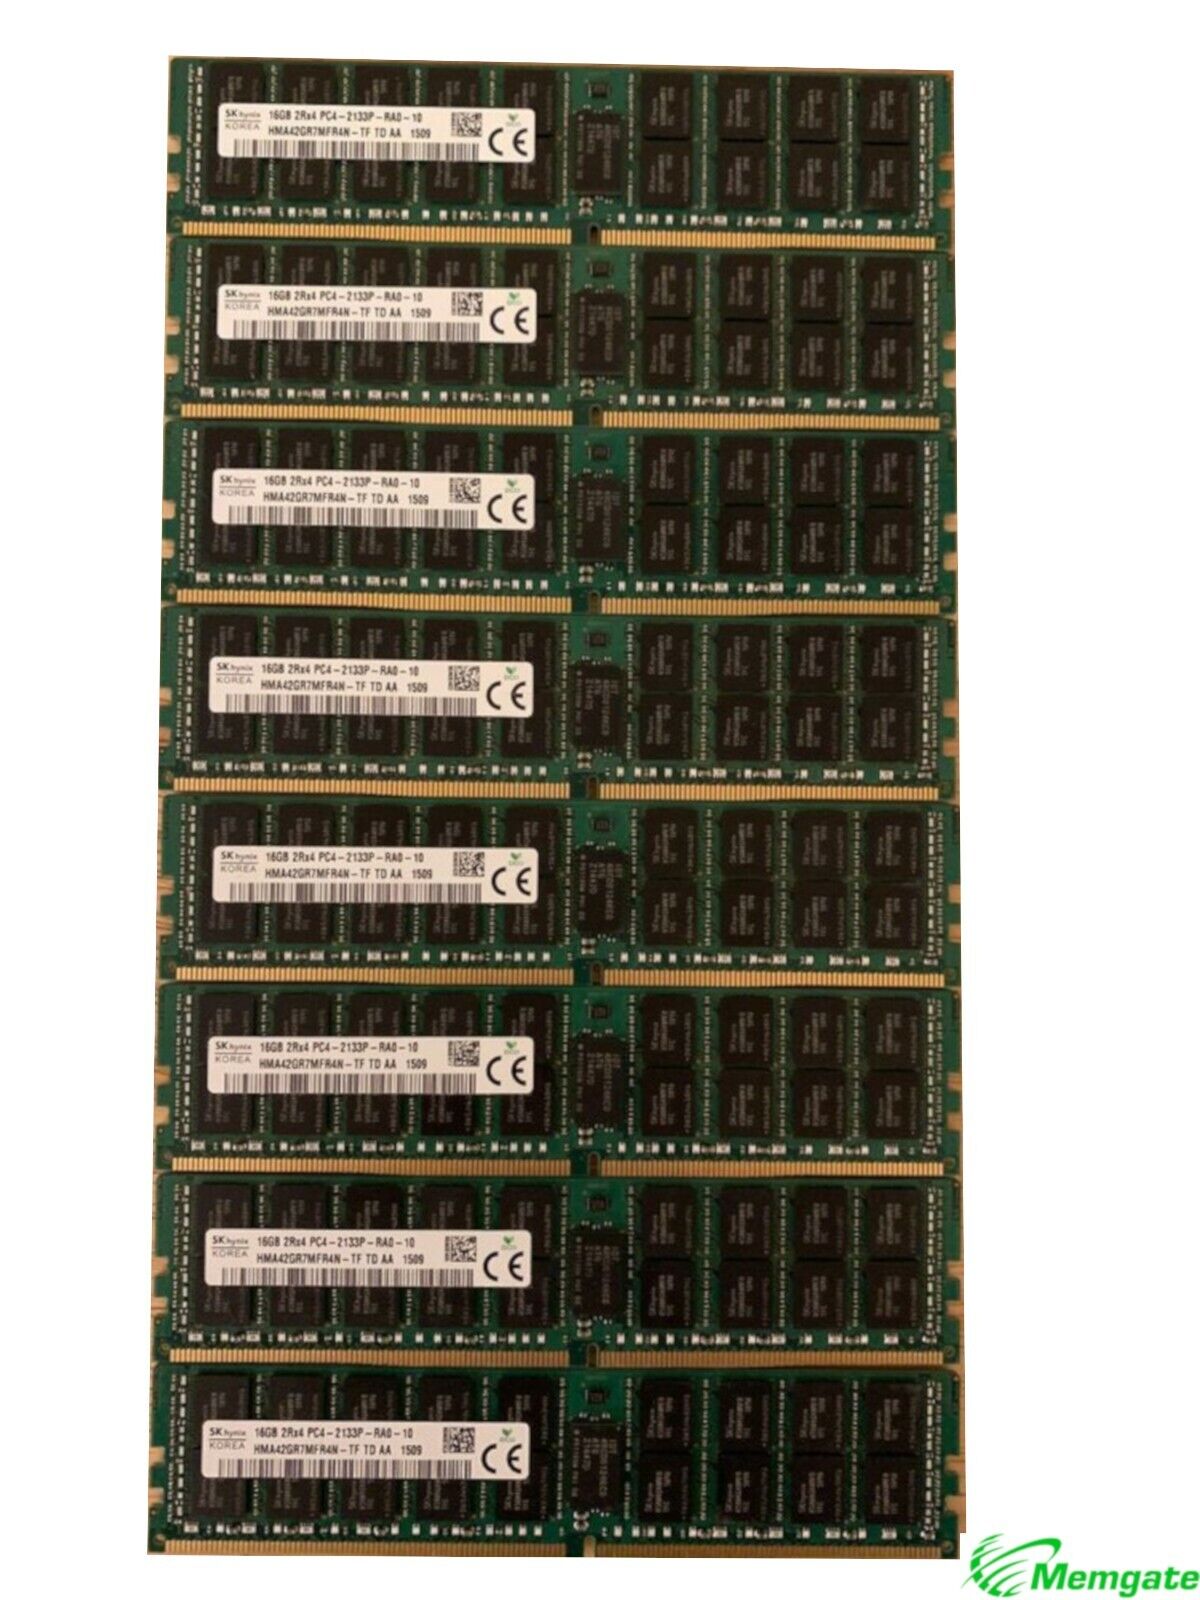 256GB (16x16GB) PC4-17000P-R DDR4 2133P ECC RDIMM Memory for Dell PowerEdge R730